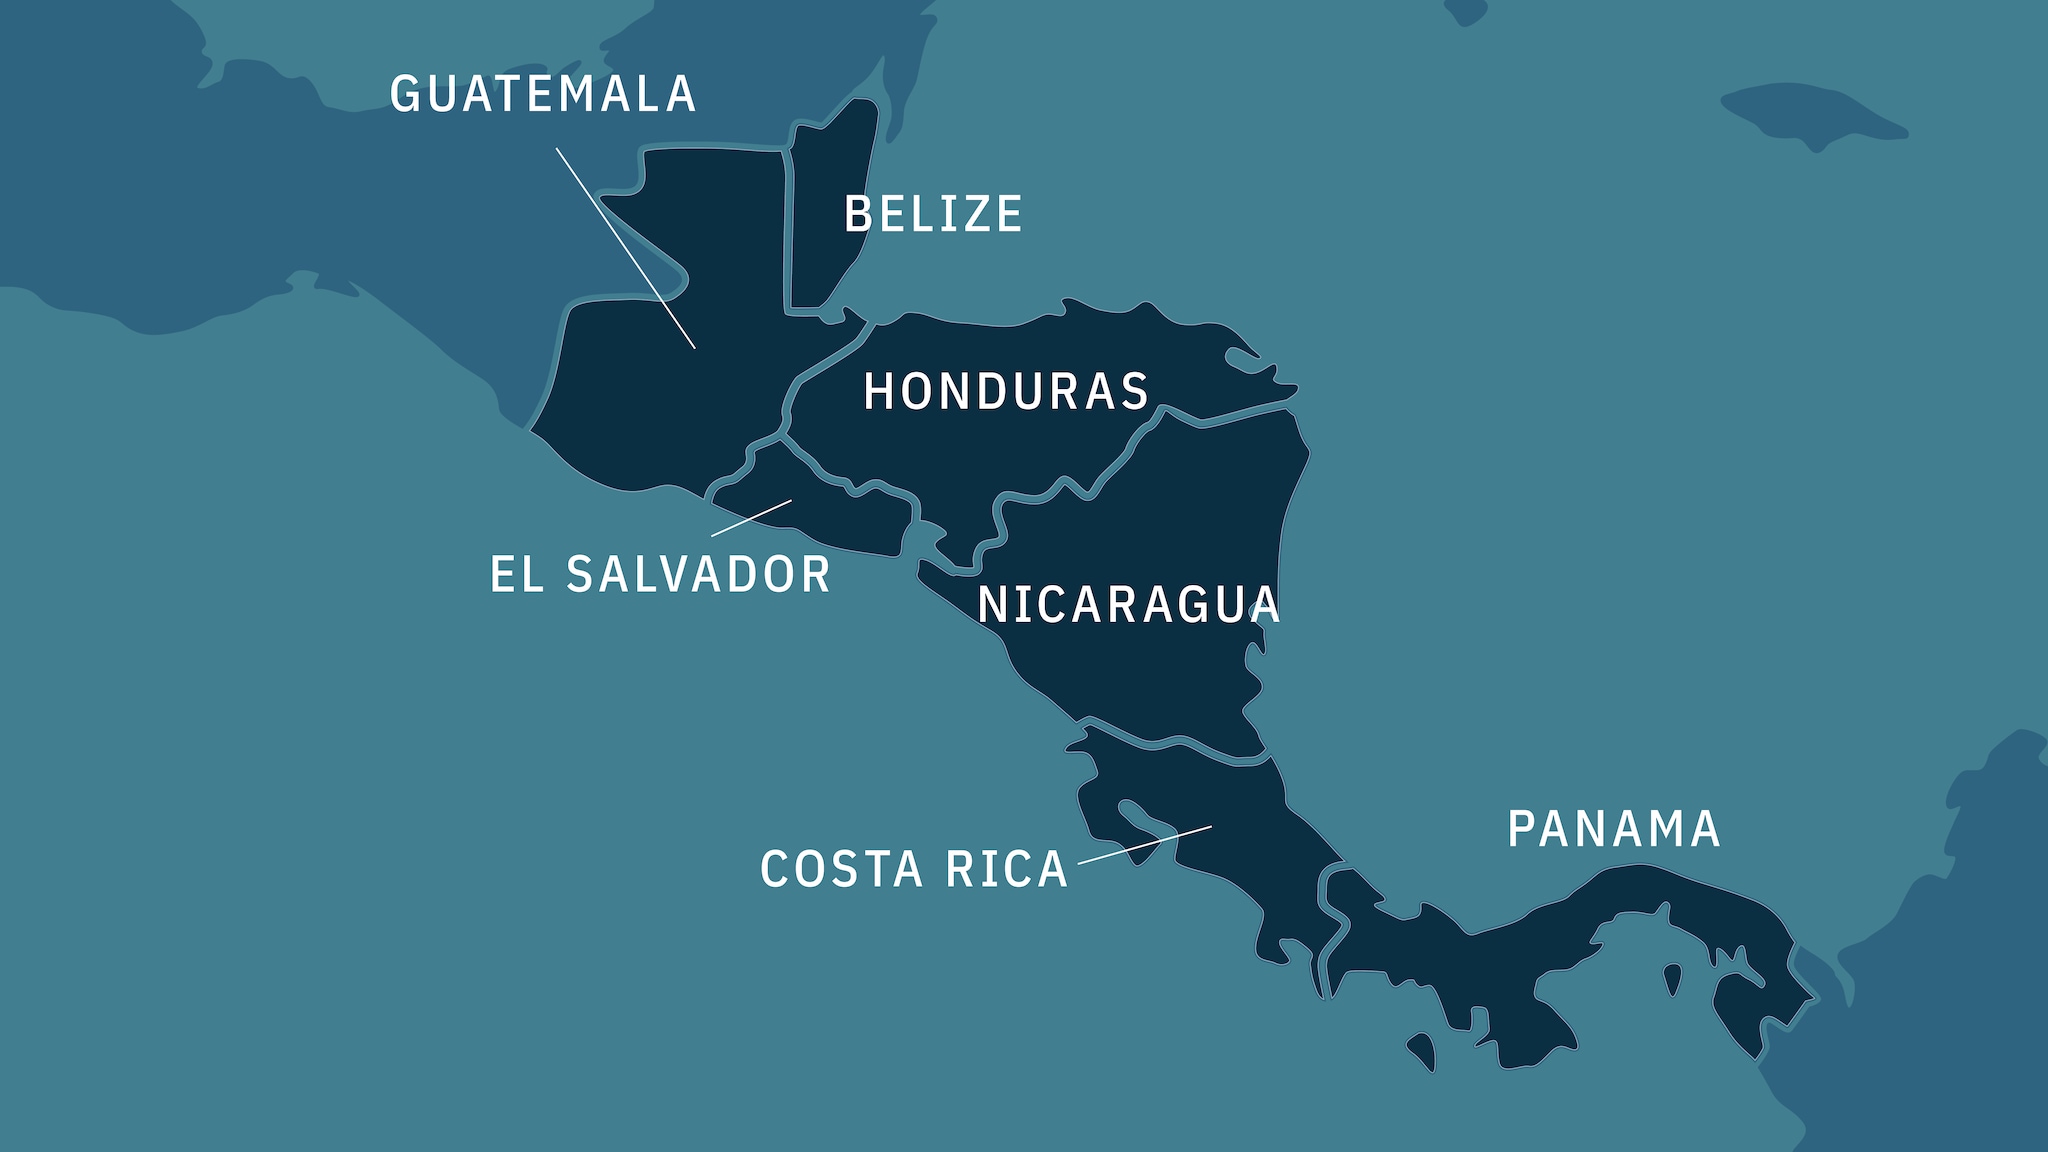 Map showing Guatemala, Belize, El Salvador, Honduras, Nicaragua, Costa Rica, and Panama